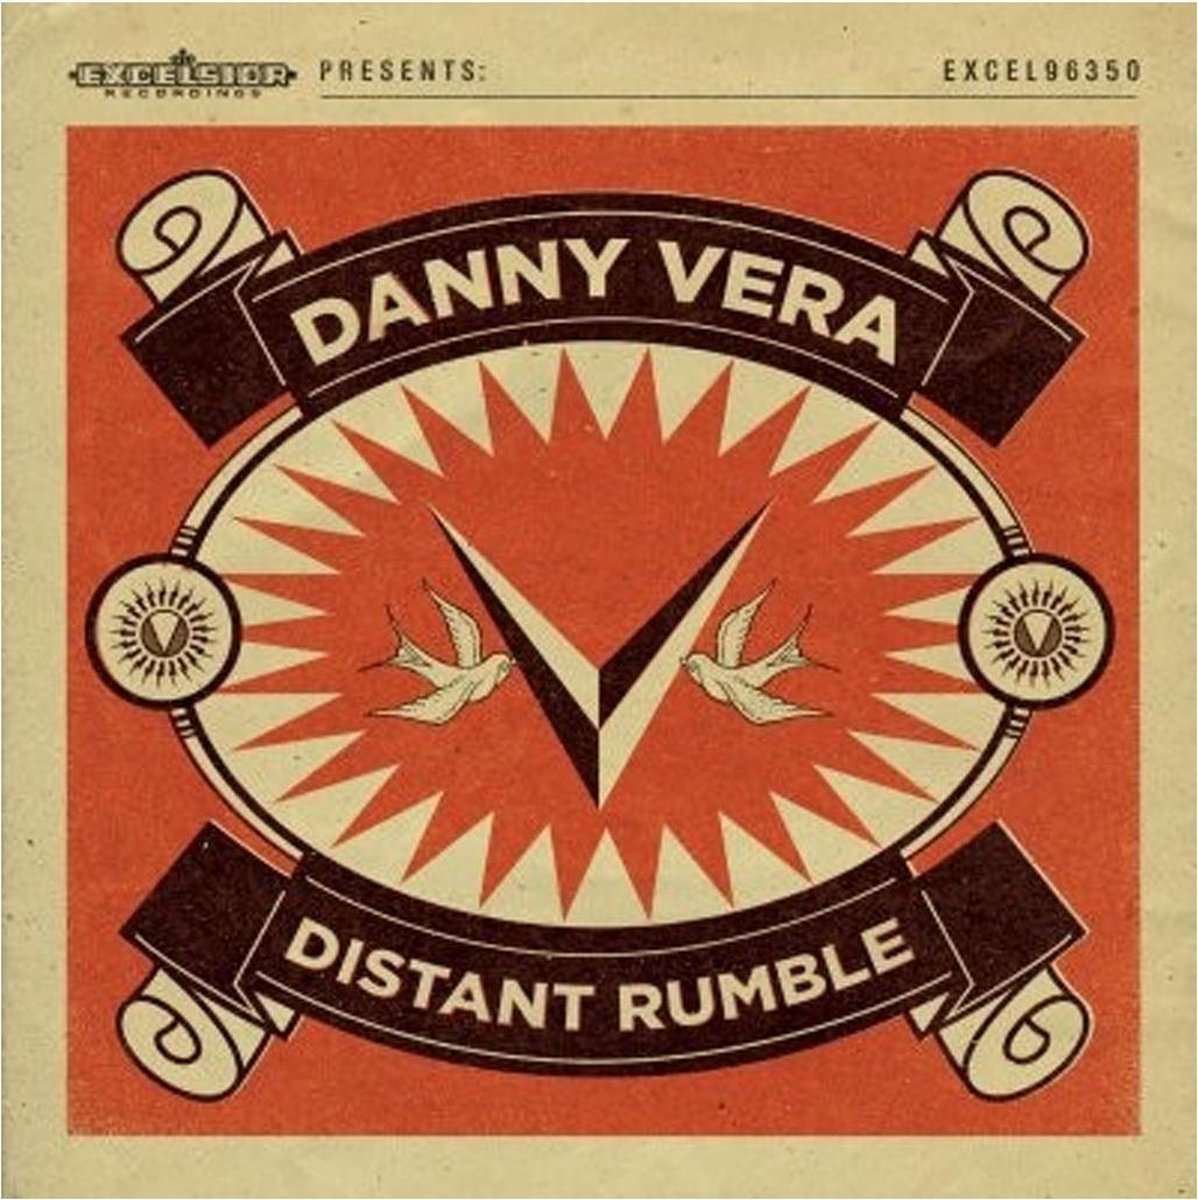 Distant Rumble (LP) - Danny Vera